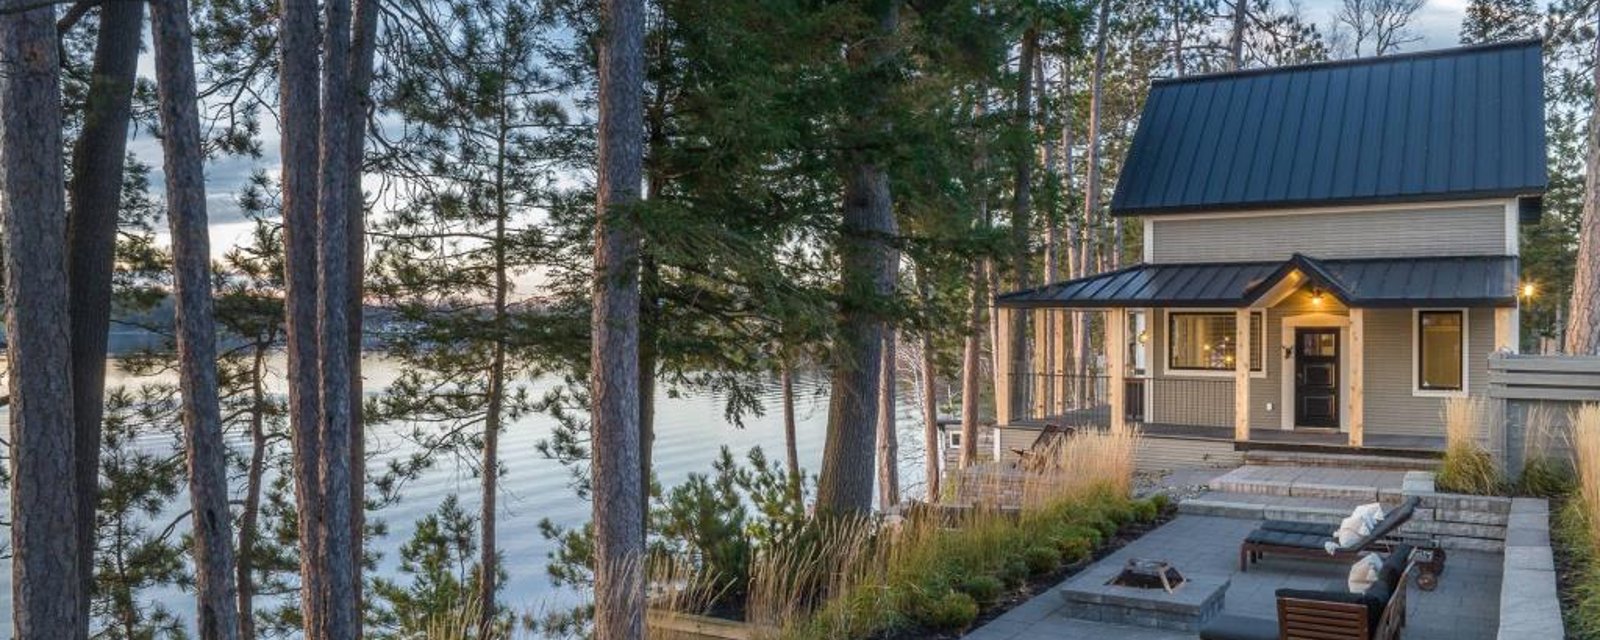 Les couchers de soleil au-dessus du lac vous éblouiront dans ce cottage meublé et splendidement décoré